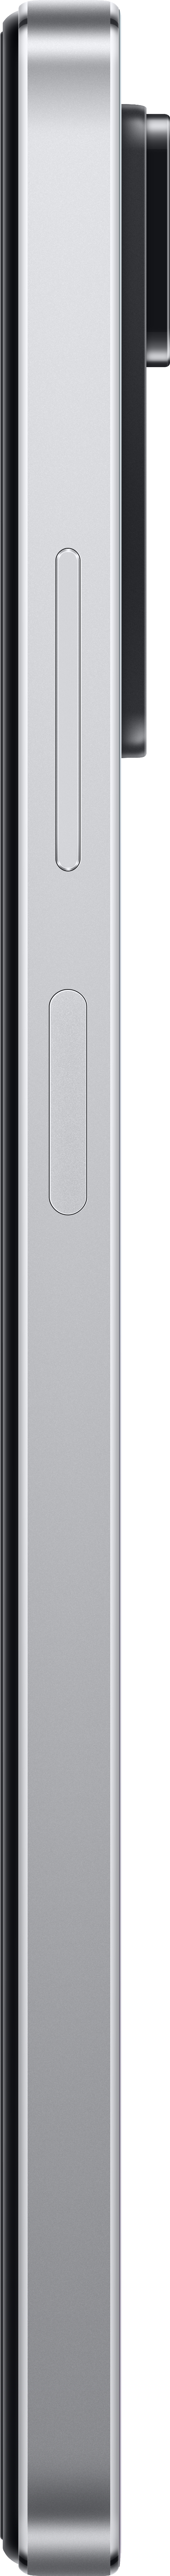 128 5G 11 XIAOMI Note SIM Dual White GB Redmi Pro Polar